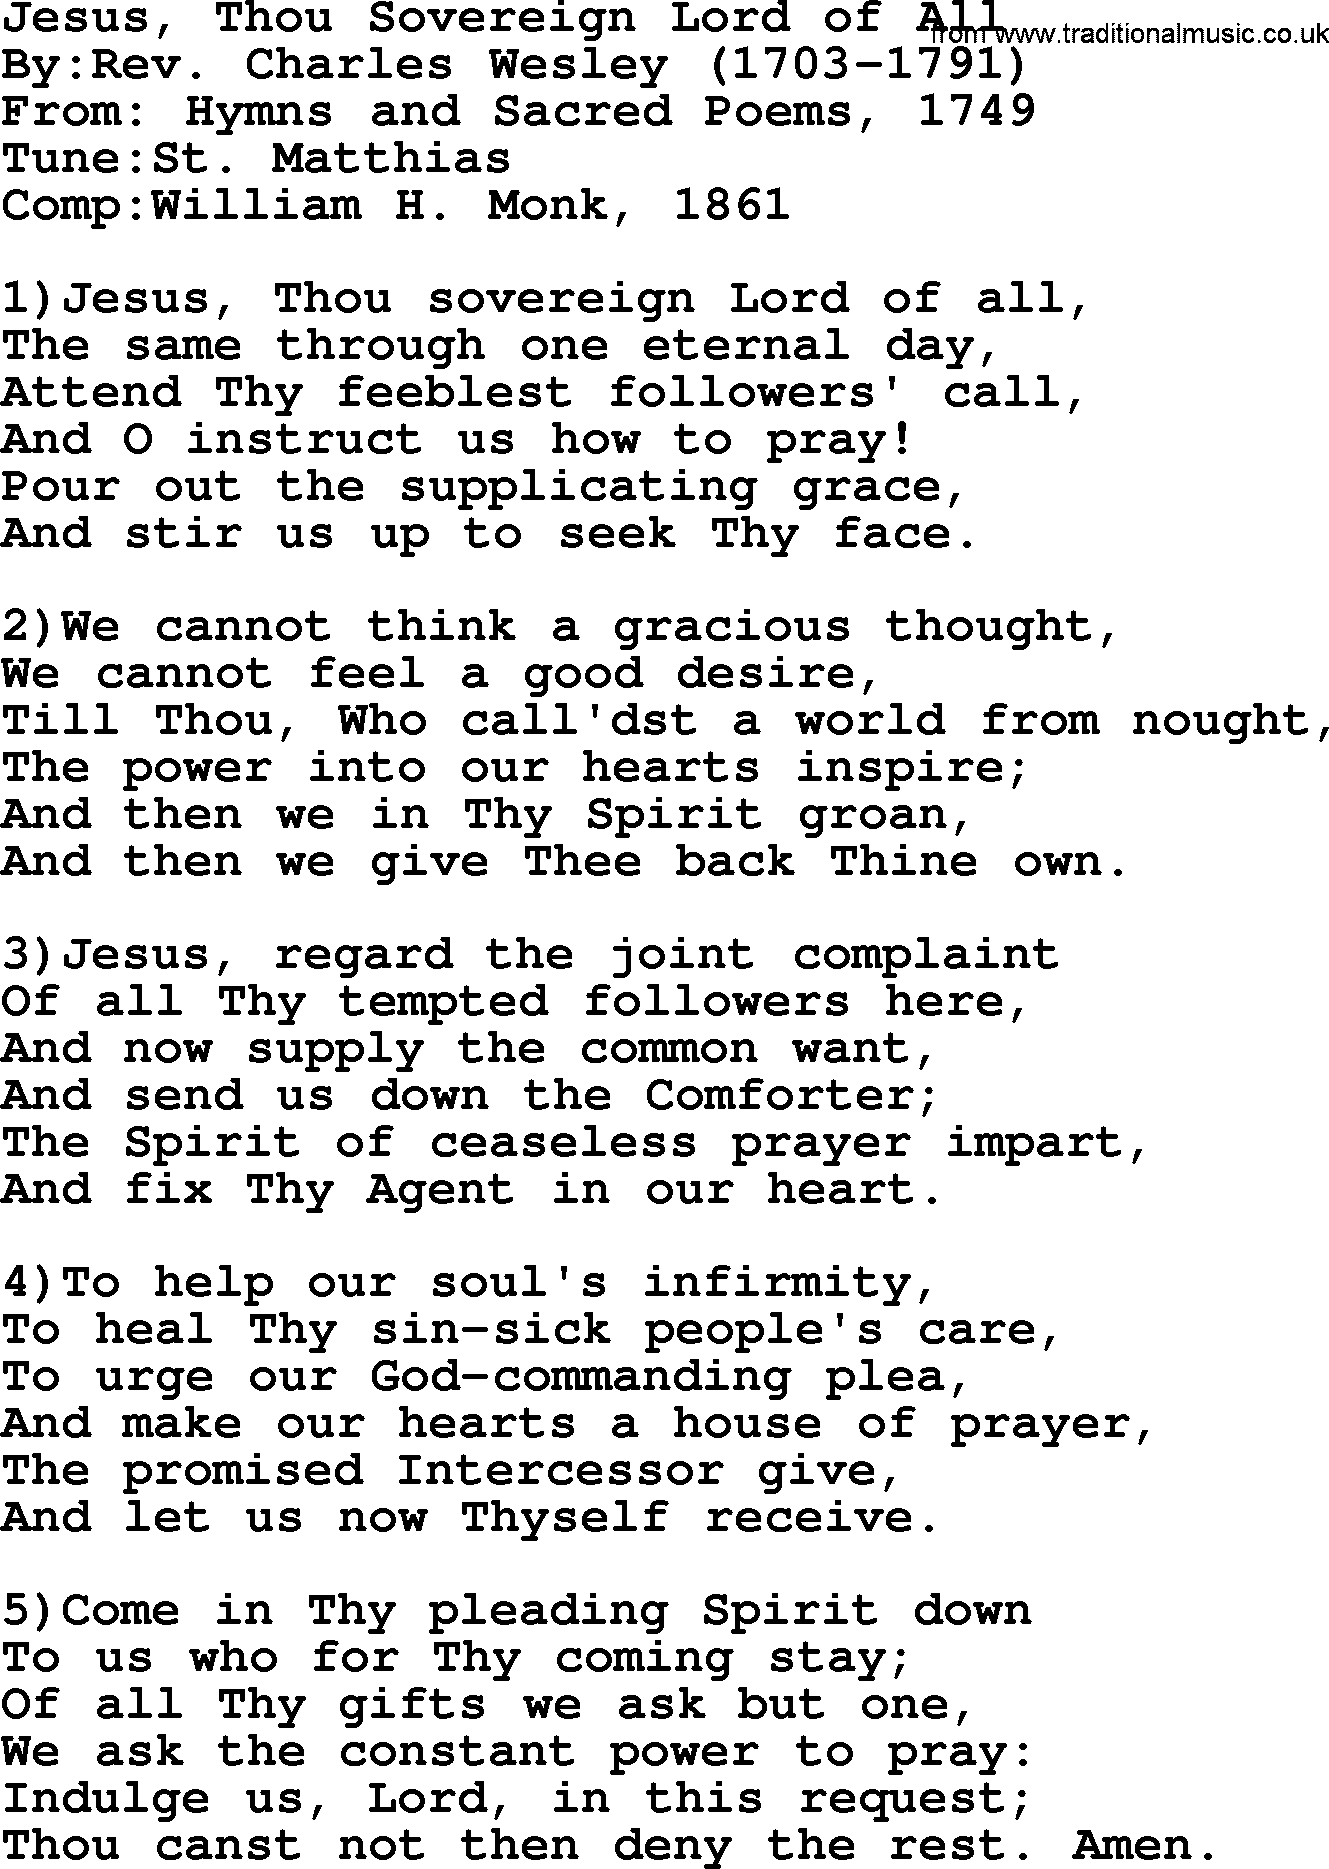 Methodist Hymn: Jesus, Thou Sovereign Lord Of All, lyrics